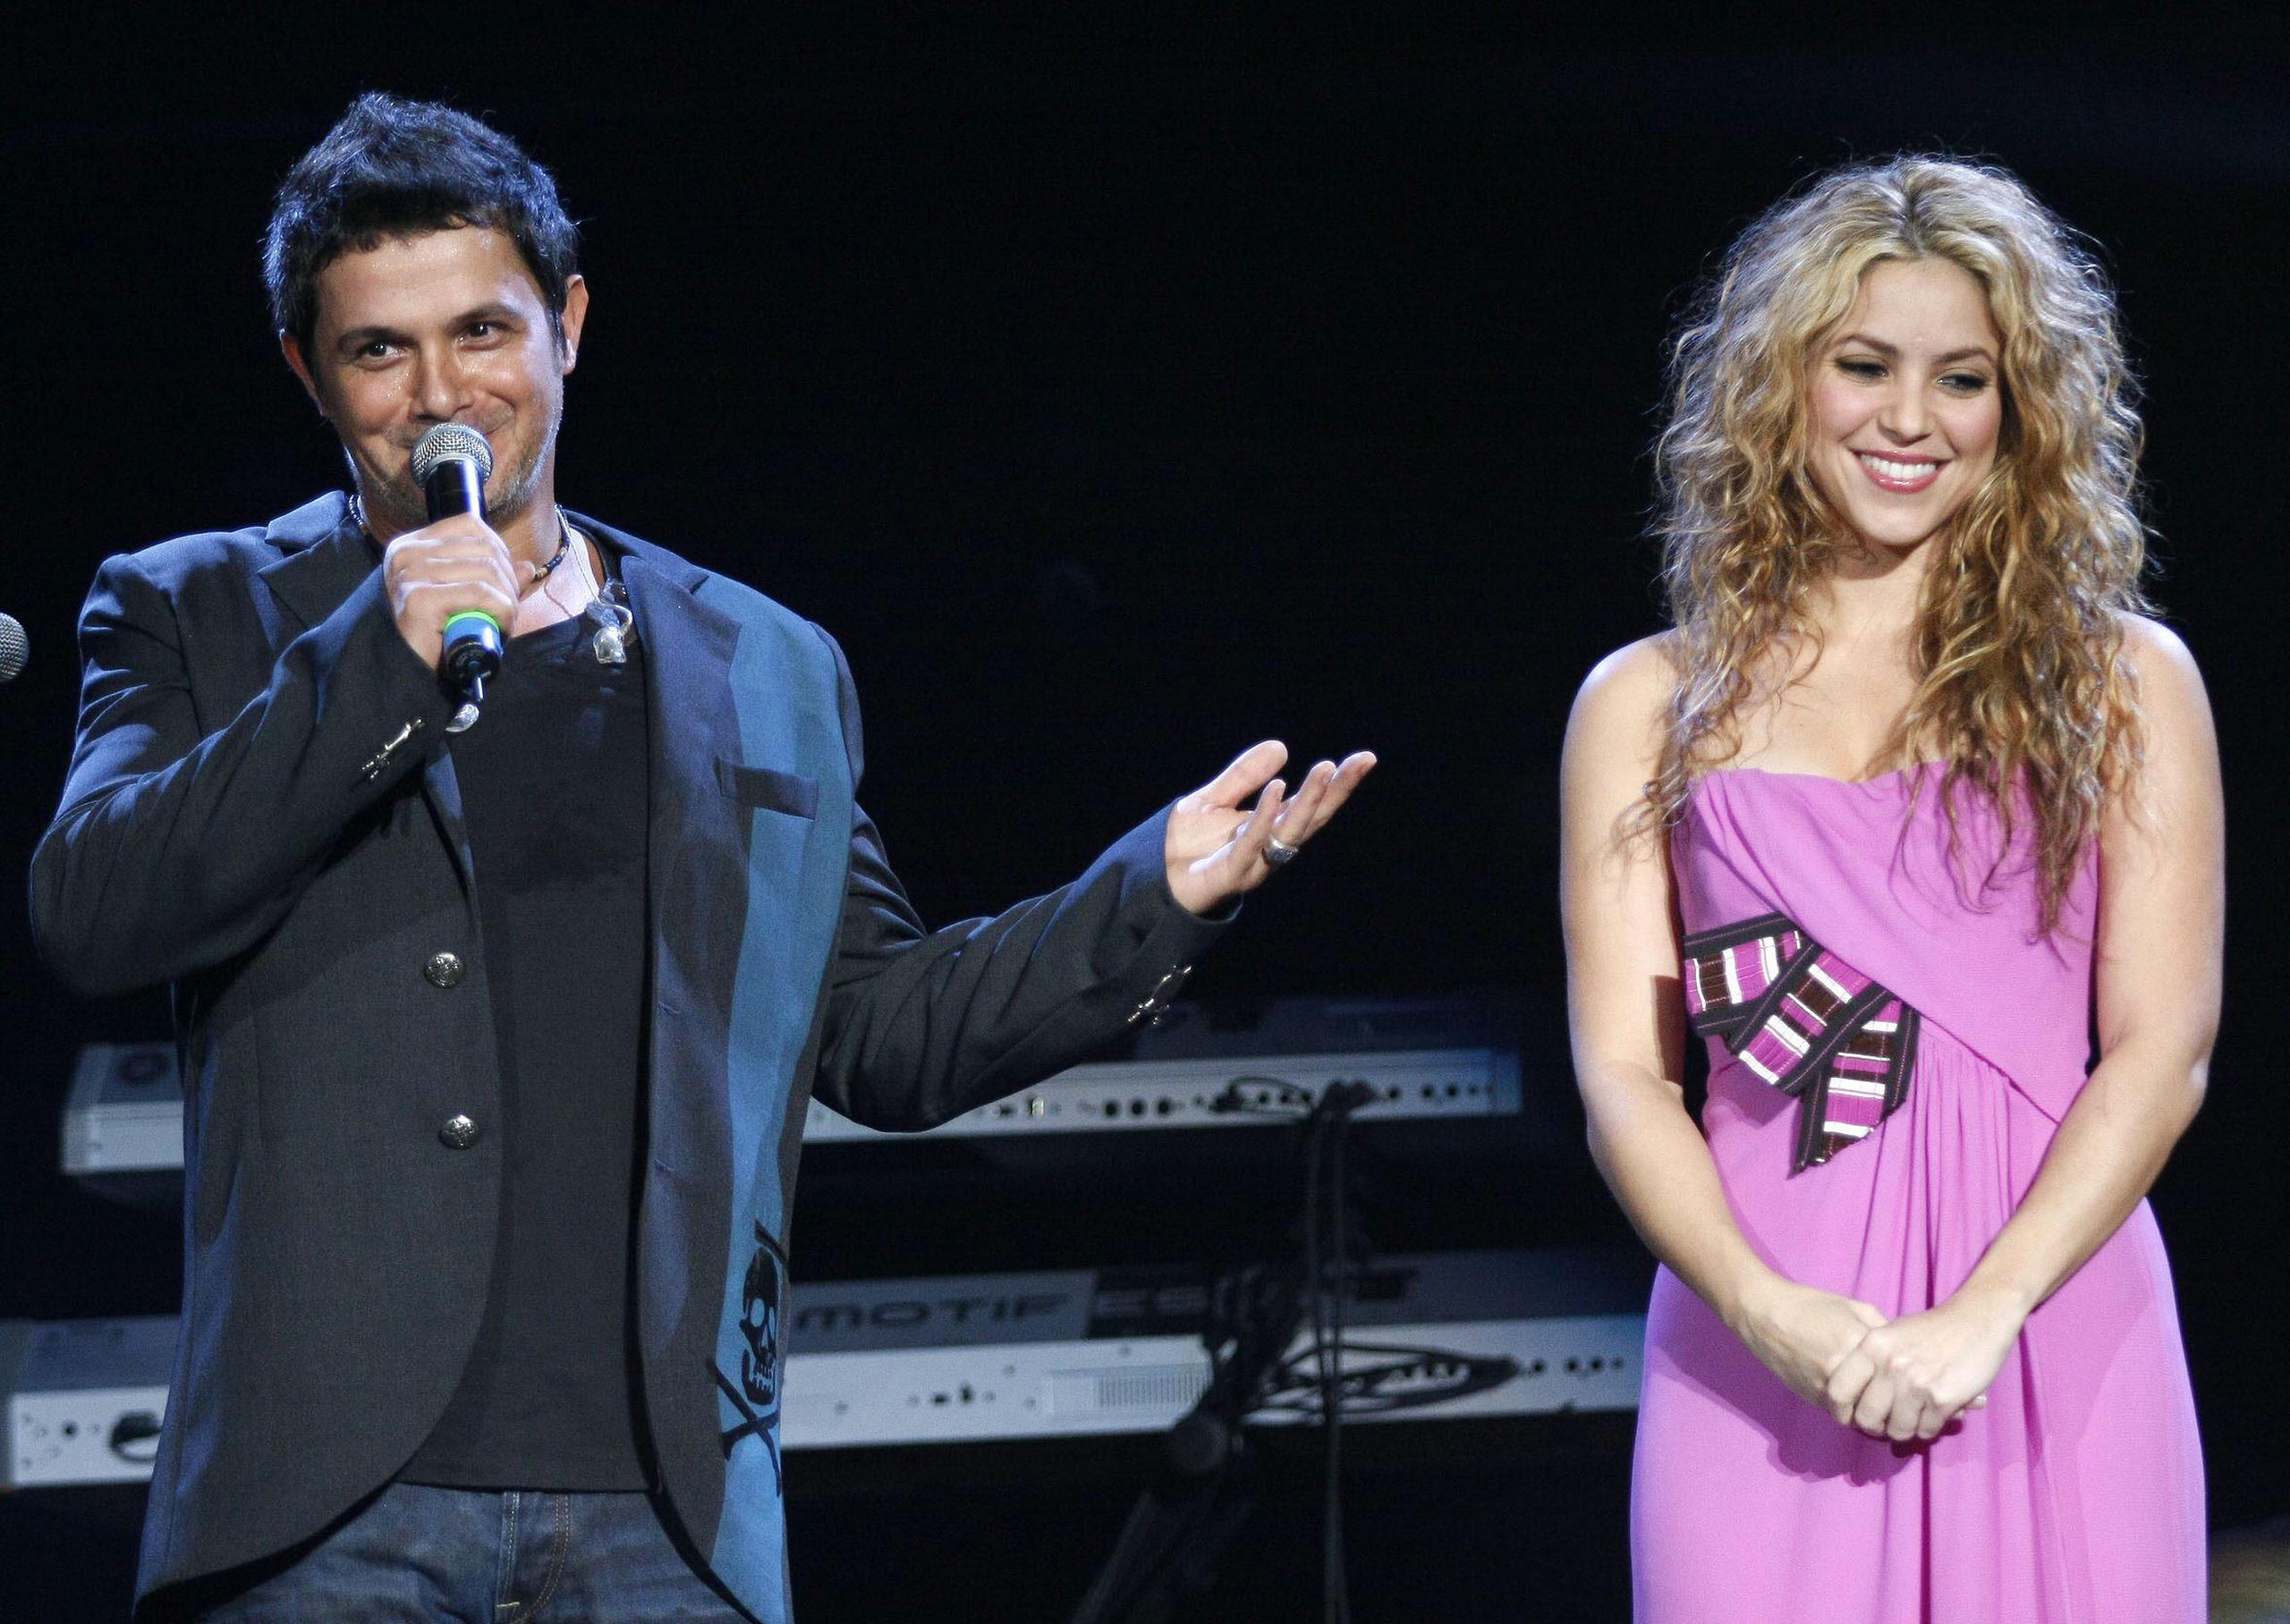 MIA115. MIAMI (EEUU), 22/11/08.- El cantante español Alejandro Sanz y la colombiana Shakira en un momento de su actuación este 21de noviembre de 2008 en "El Gran Concierto" como parte de la celebración del 25 aniversario de Spanish Broadcasting System (SBS), que tuvo lugar en Miami, Florida (EE.UU.). EFE/John Watson-Riley